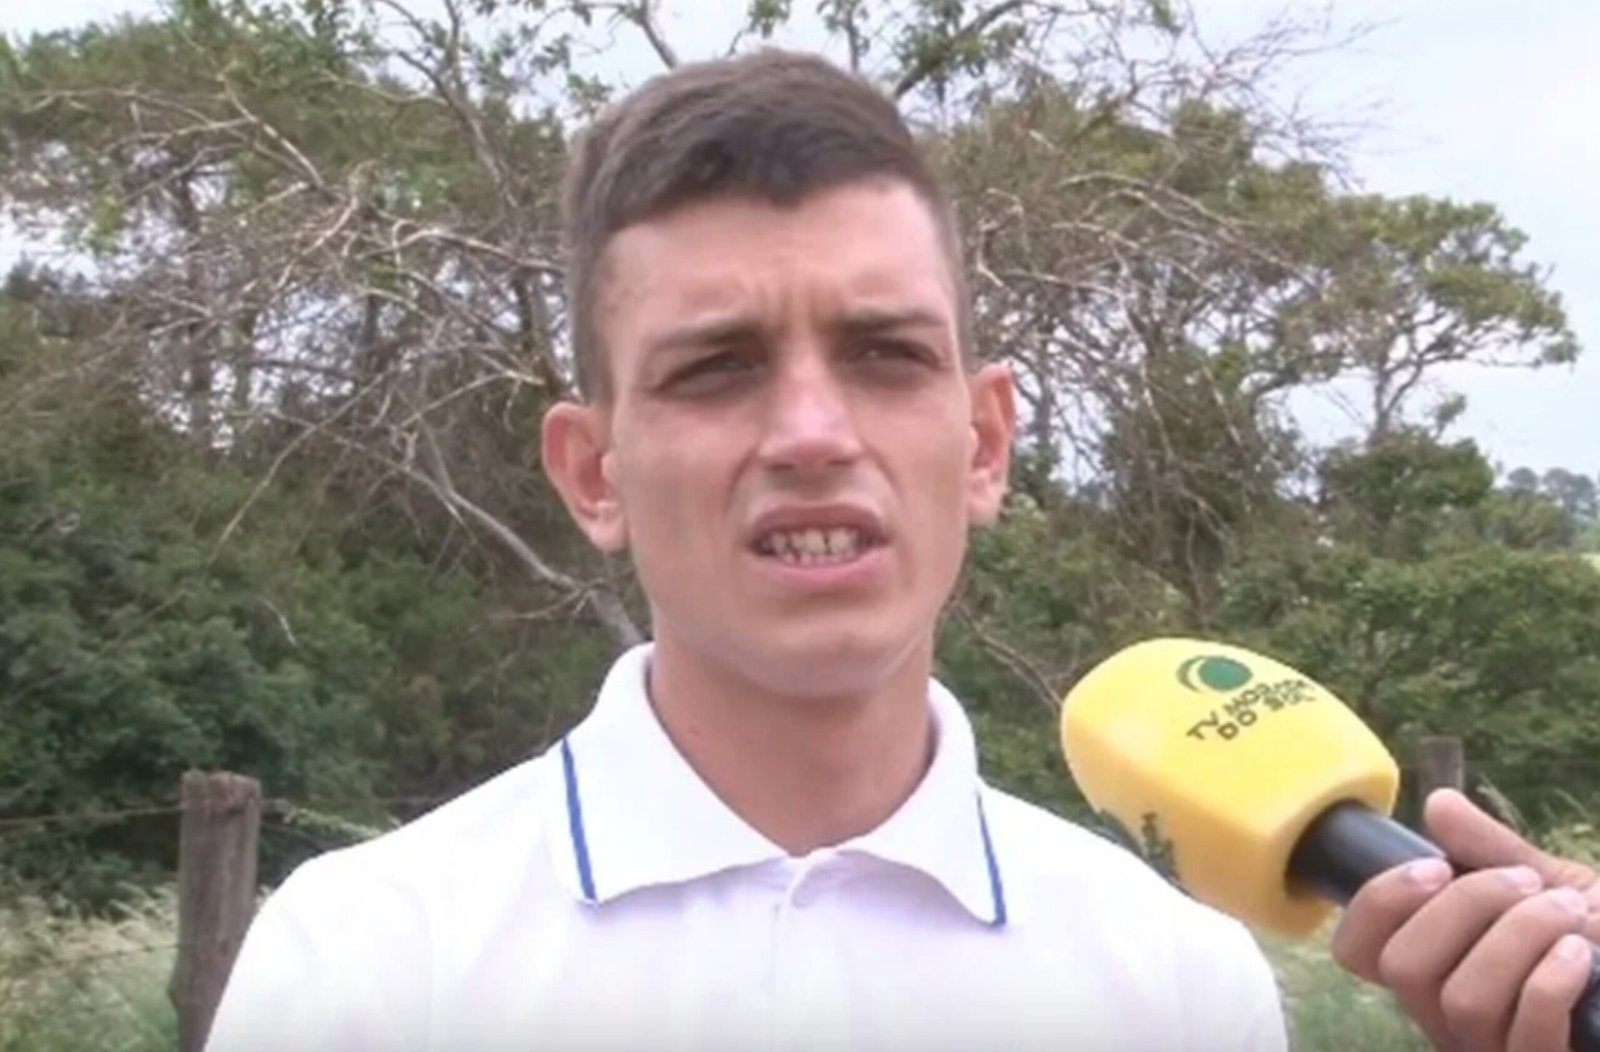 Genro que traiu mulher com o próprio sogro, em Araraquara, diz que sofria ameaças; vídeo